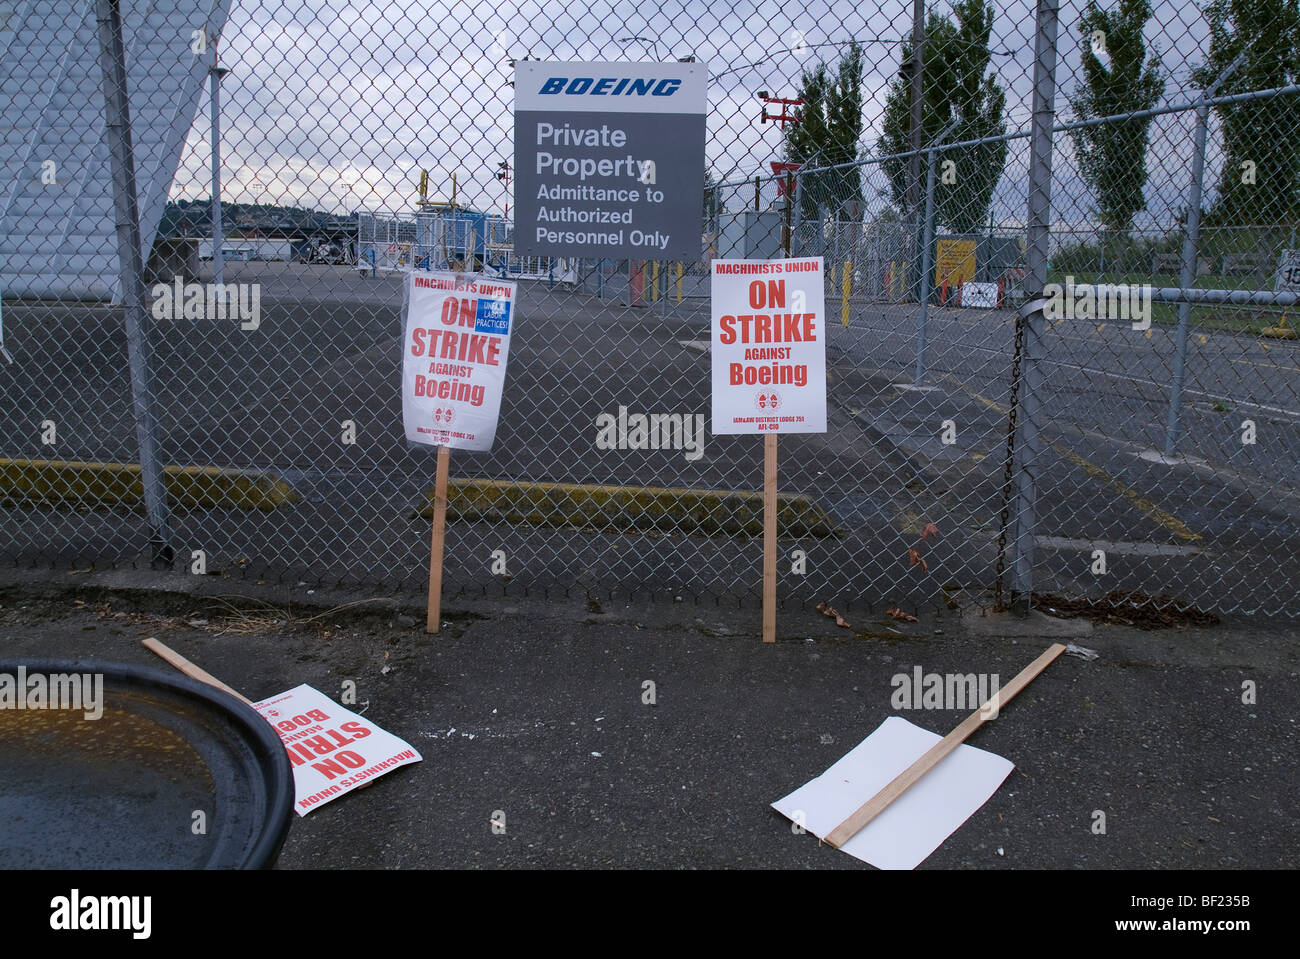 Boeing macchinisti unione "sciopero" picket segni trovati in un post non presidiate. Foto Stock